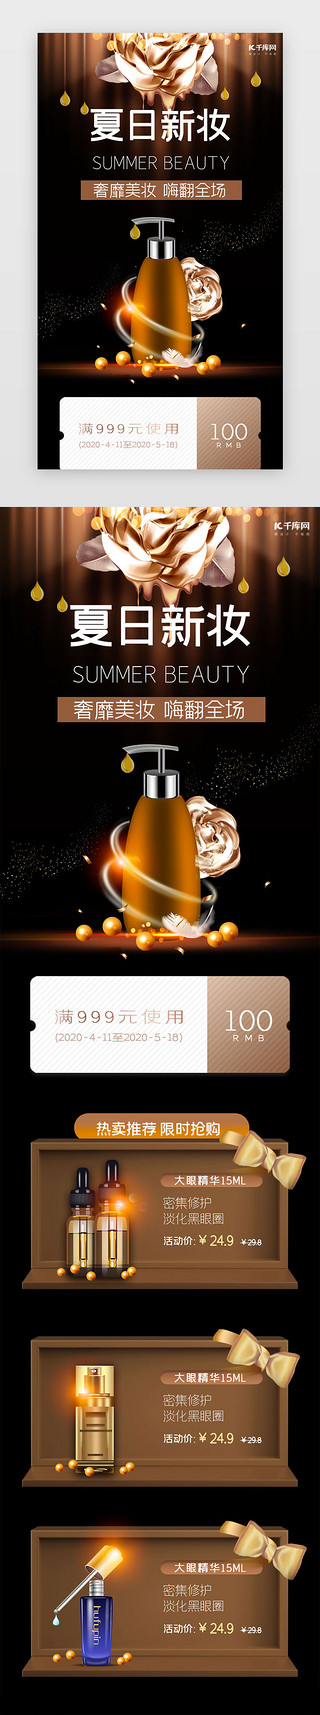 棕色棕色UI设计素材_棕色简约夏日美妆促销h5长图电商